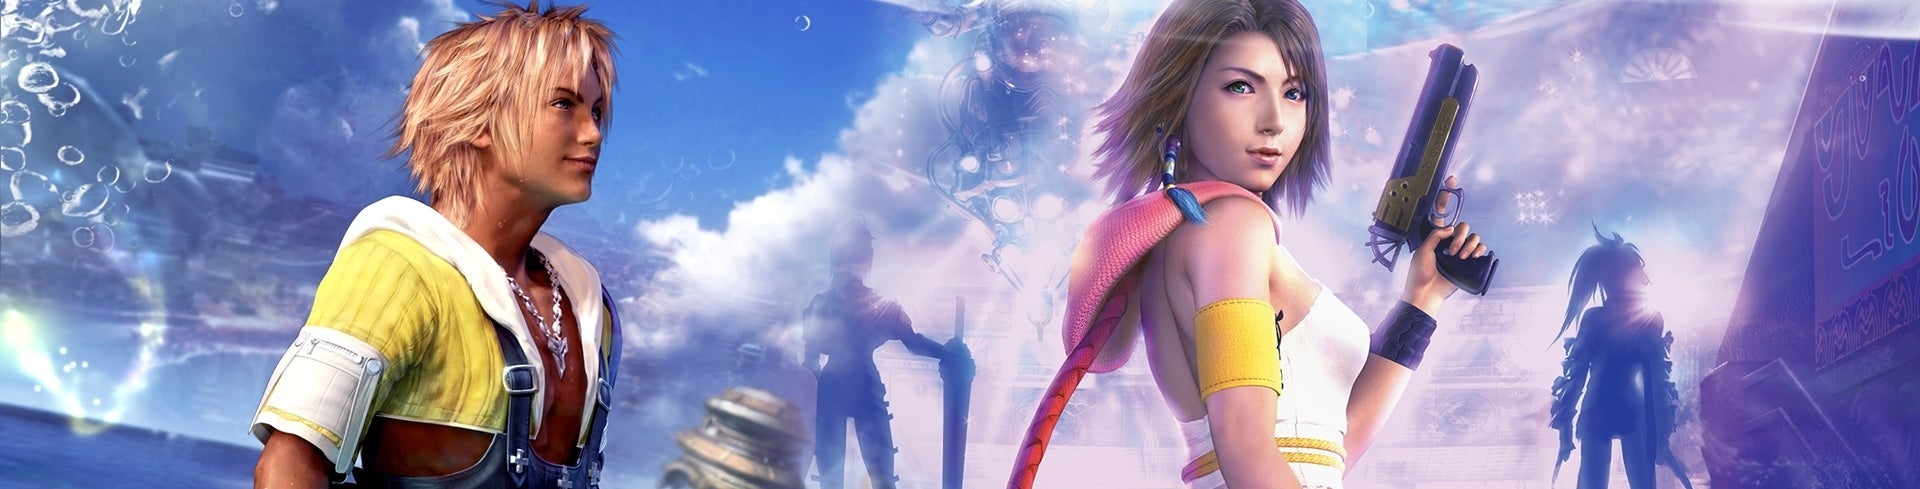 Immagine di Final Fantasy X/X-2 HD Remaster - prova